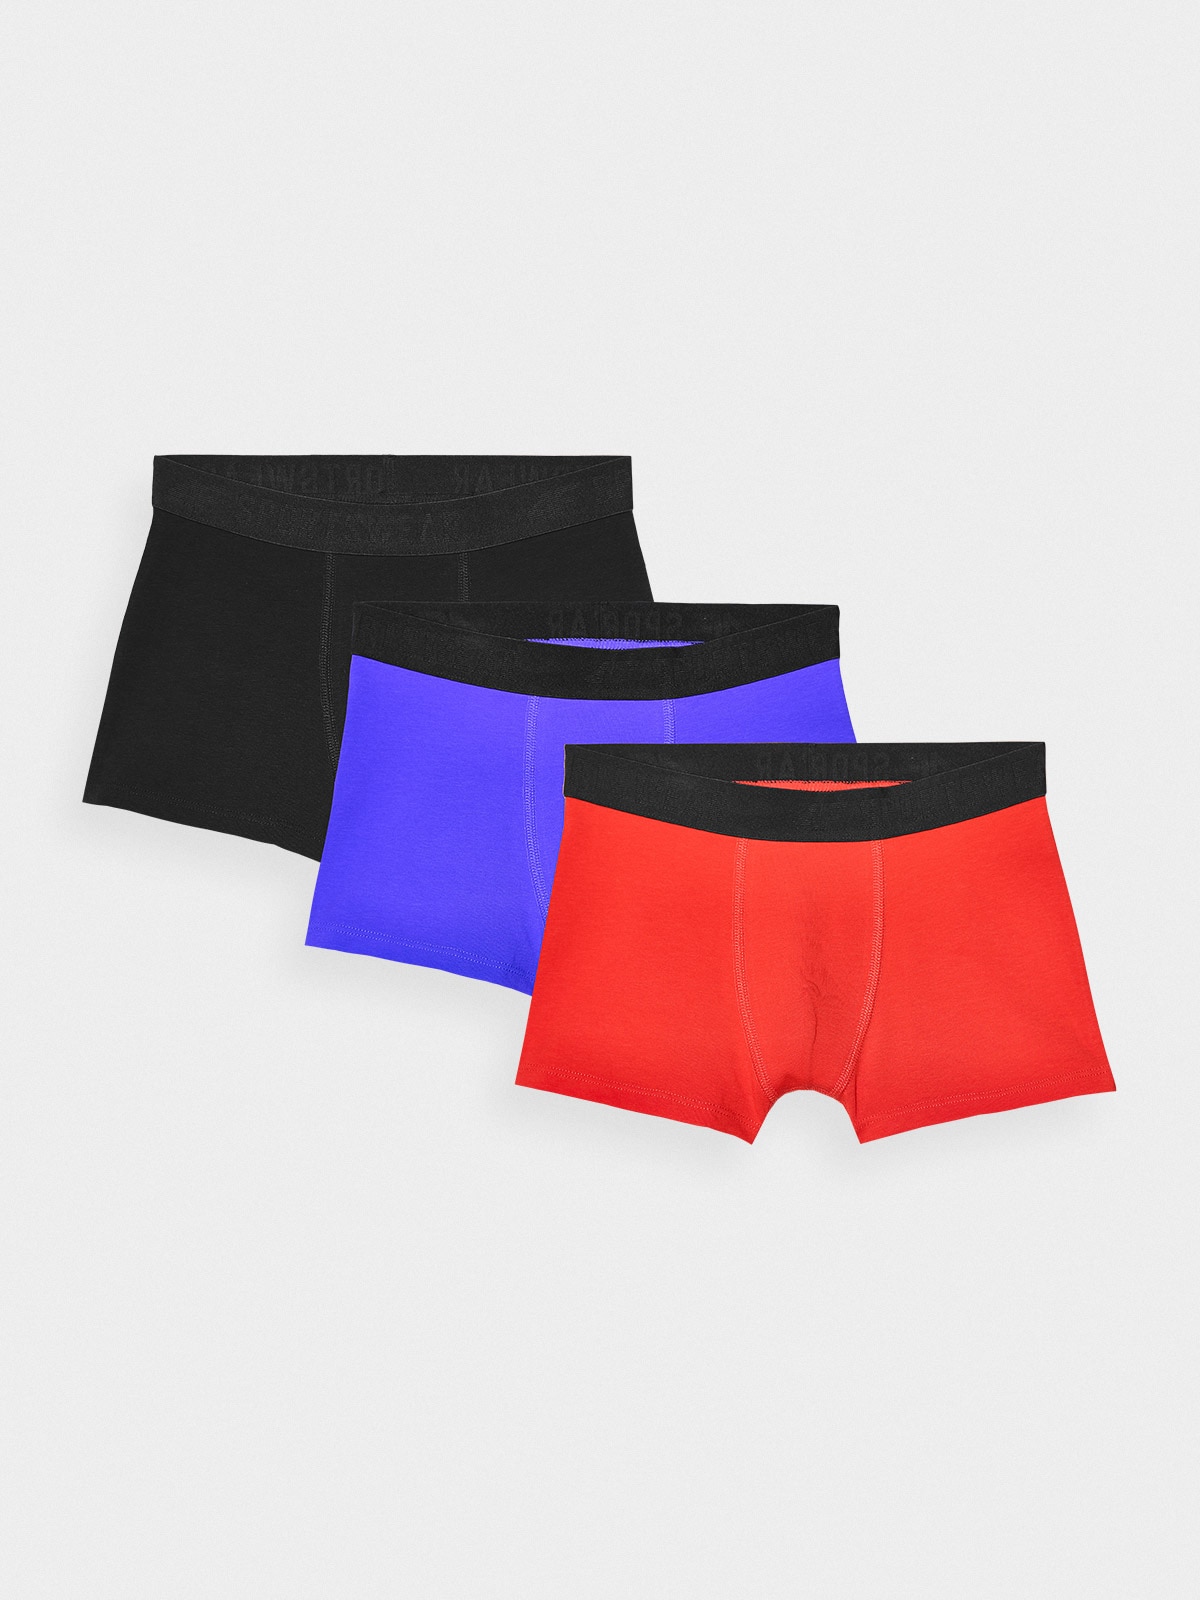 Chlapecké spodní prádlo boxerky (3-pack) - multibarevné